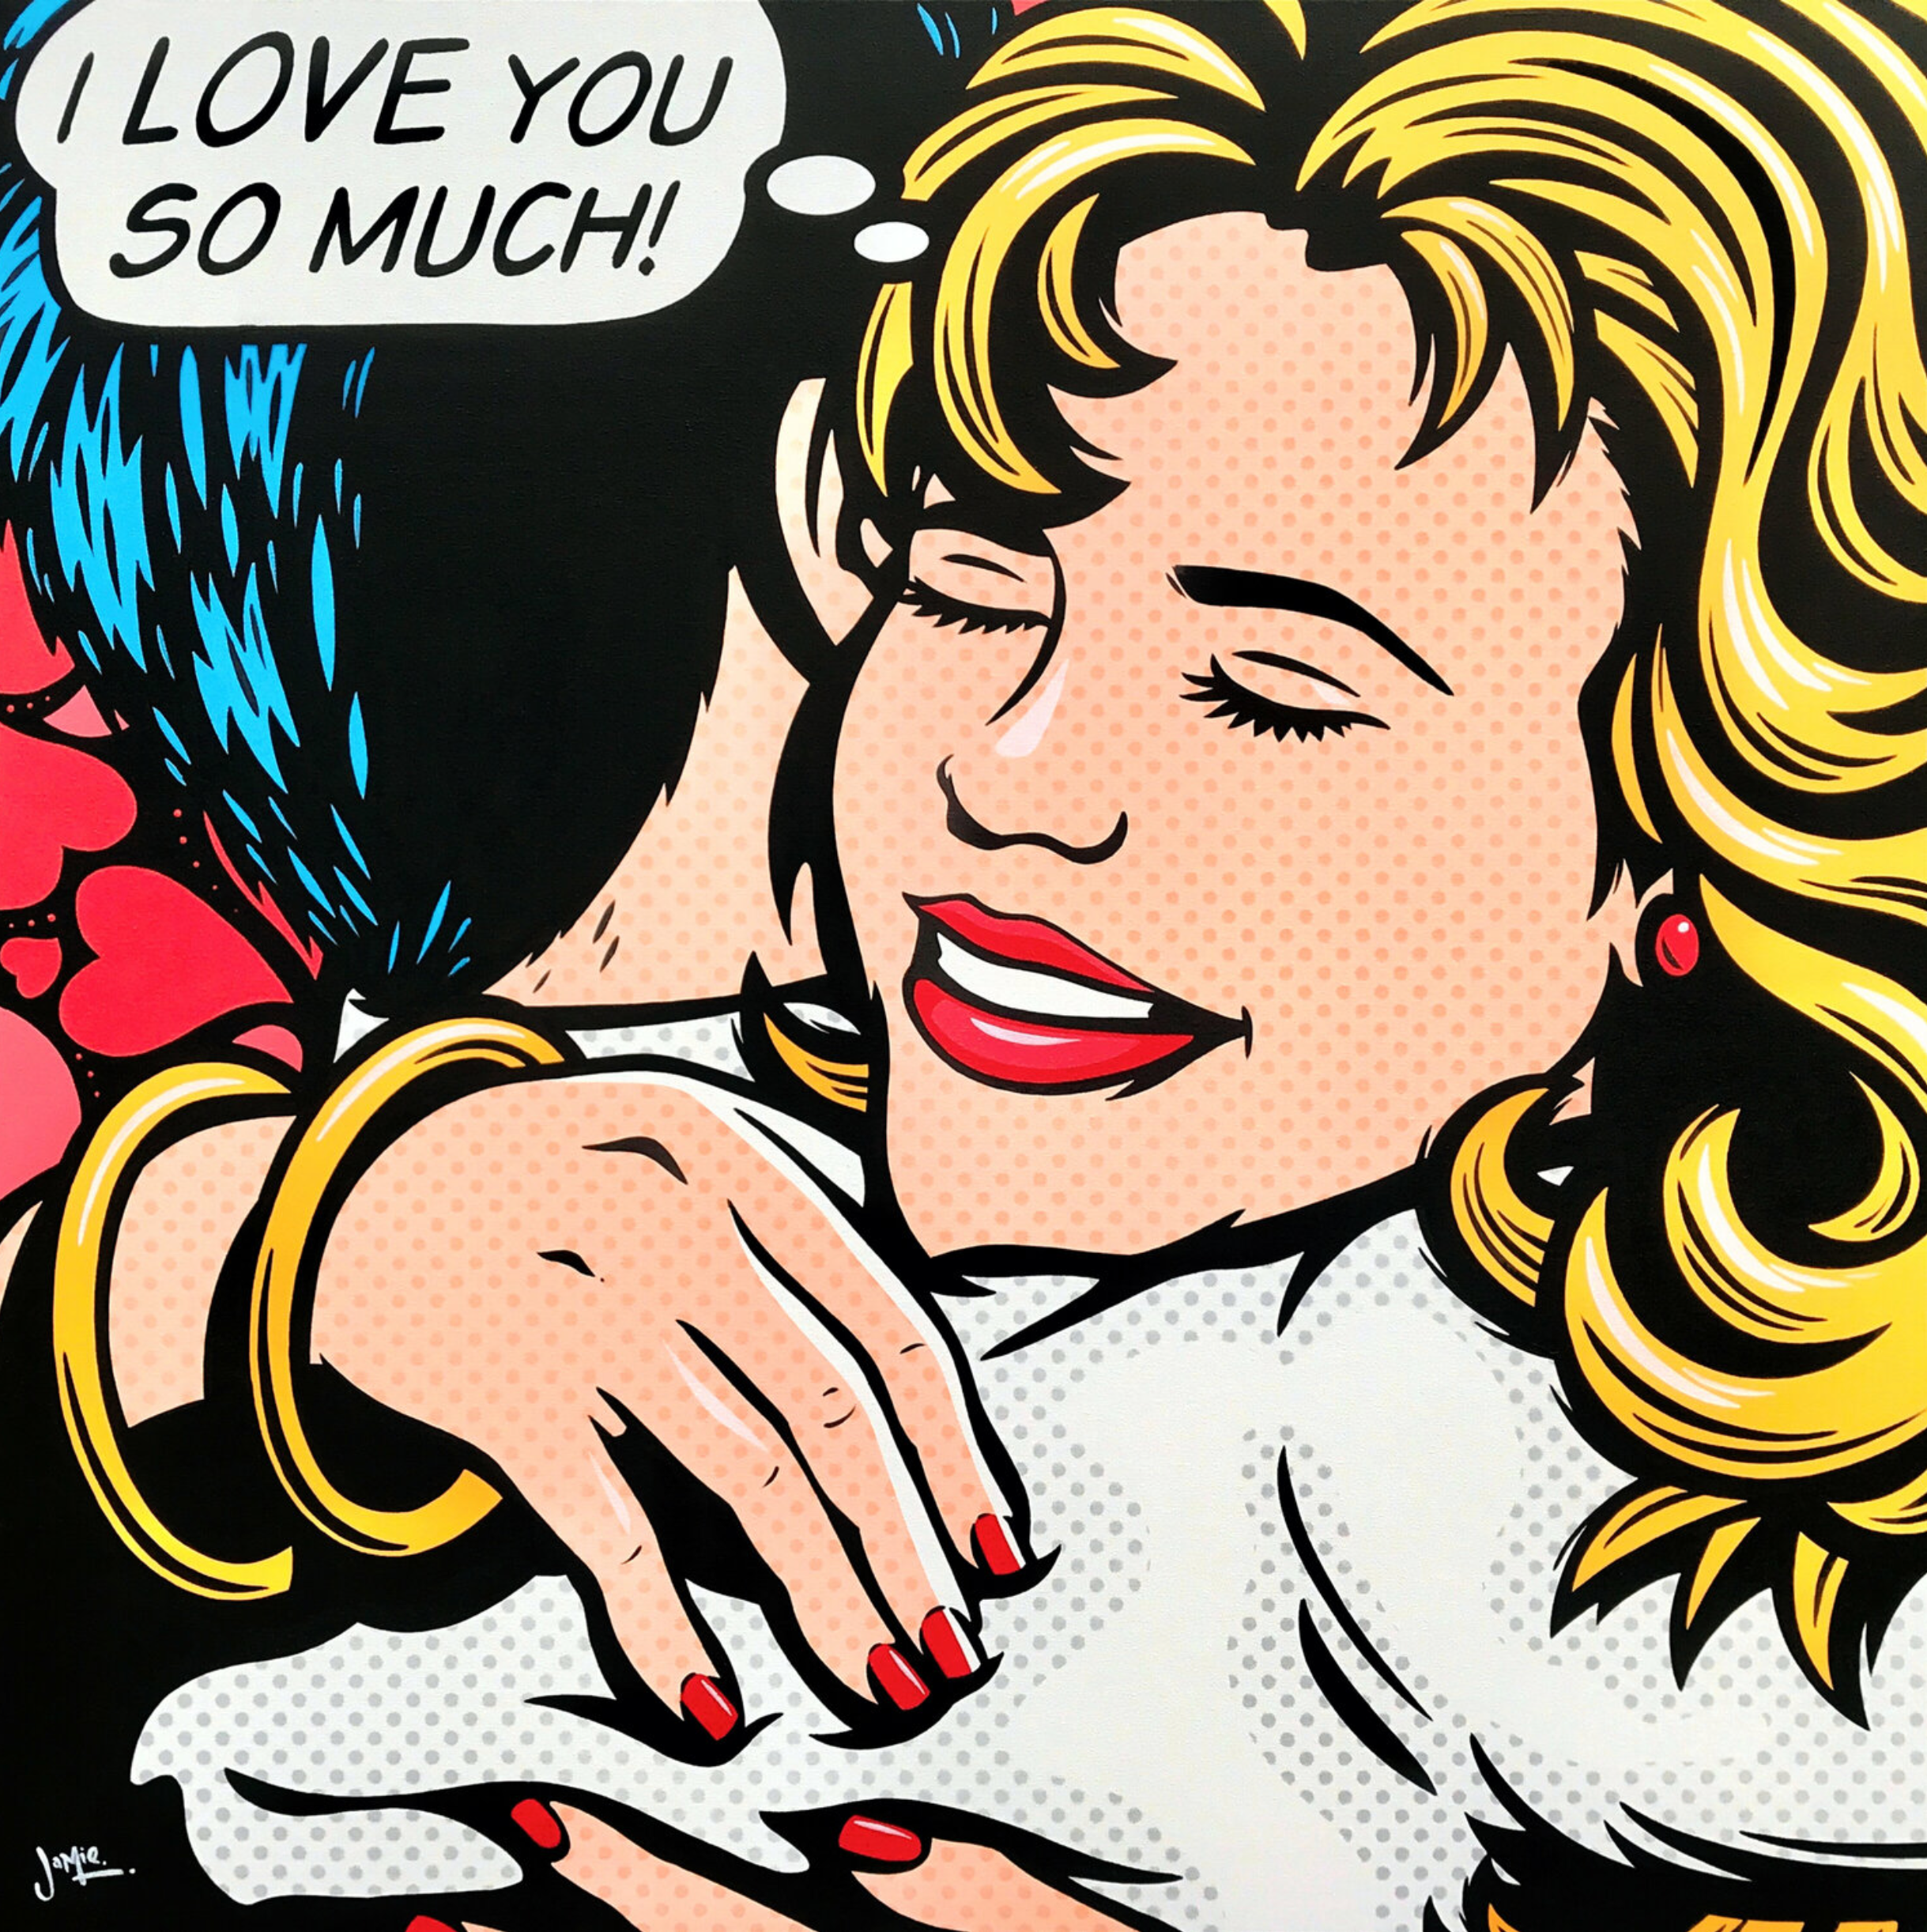 Quadro pop art di Jamie Lee "I Love You" in stile fumetto.  Design originale, pop art dipinta a mano. Una giovane coppia in un abbraccio d'amore con una bolla di pensiero: "Ti amo così tanto". Ma chi lo sta pensando? Lei, lui, forse entrambi?